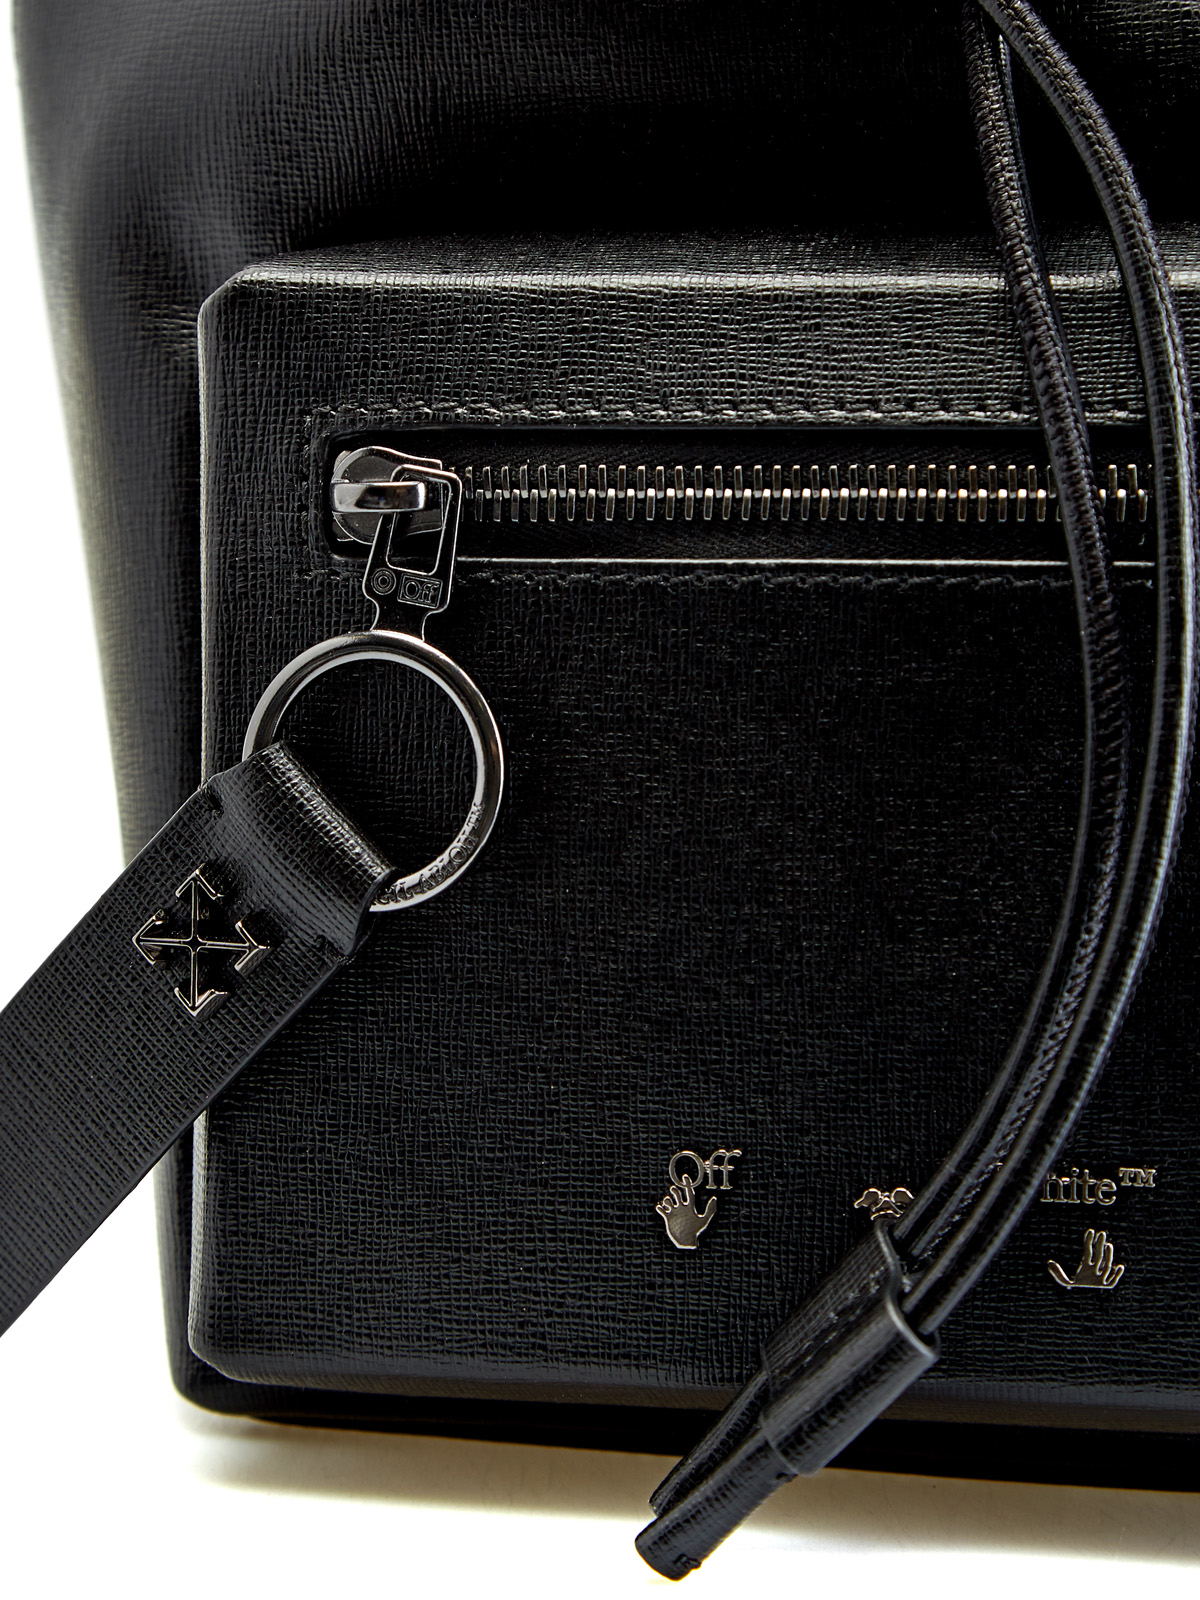 Кожаный рюкзак Diag с принтом в диагональную полоску OFF-WHITE, цвет черно-белый, размер 36;36.5;37.5;38;38.5;39;40 - фото 6